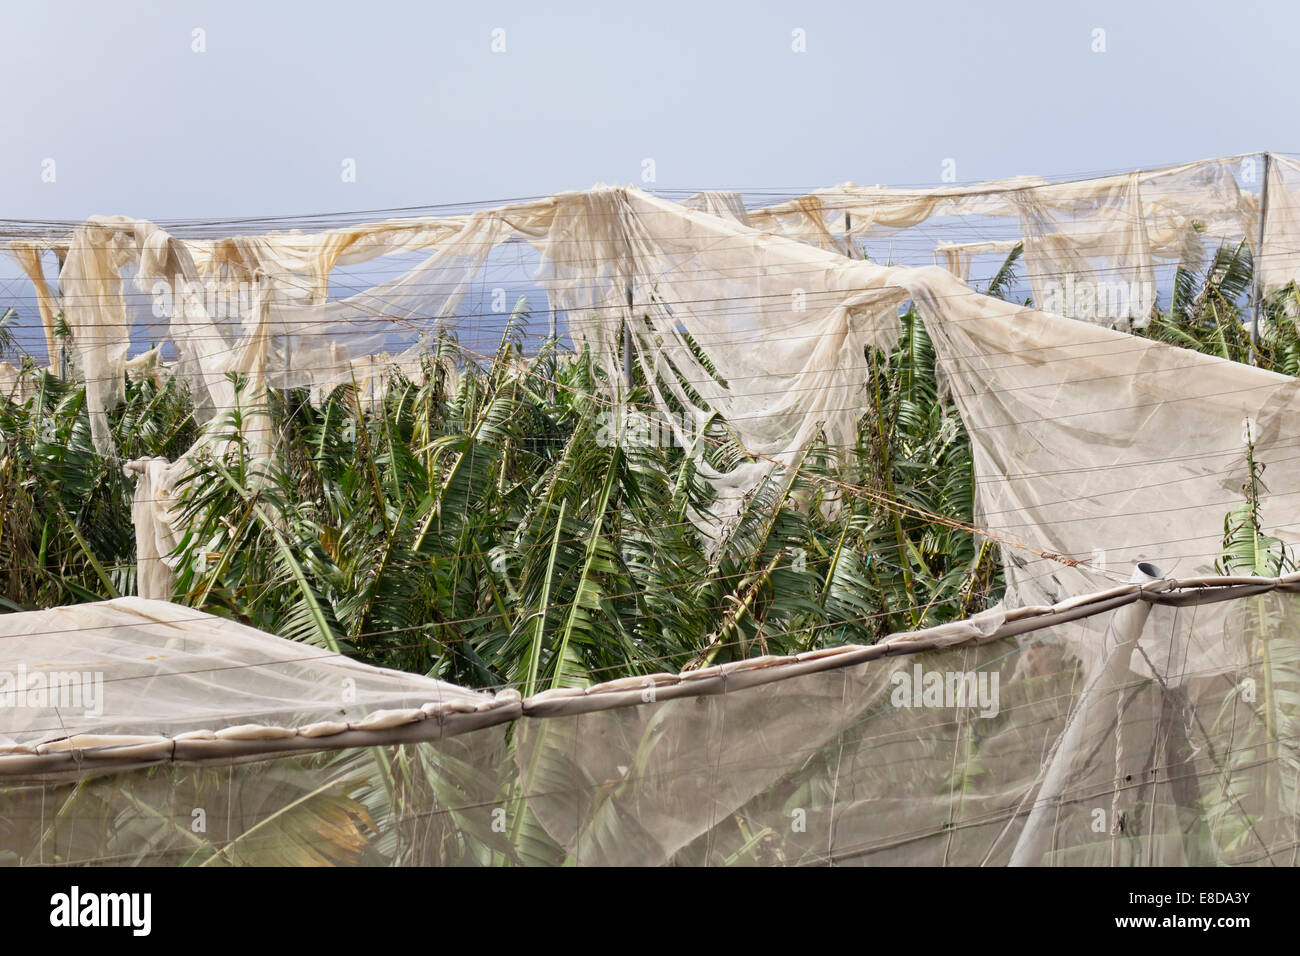 Banana plantations shredded by wind in Puerto Naos, La Palma, Canary Islands, Spain Stock Photo